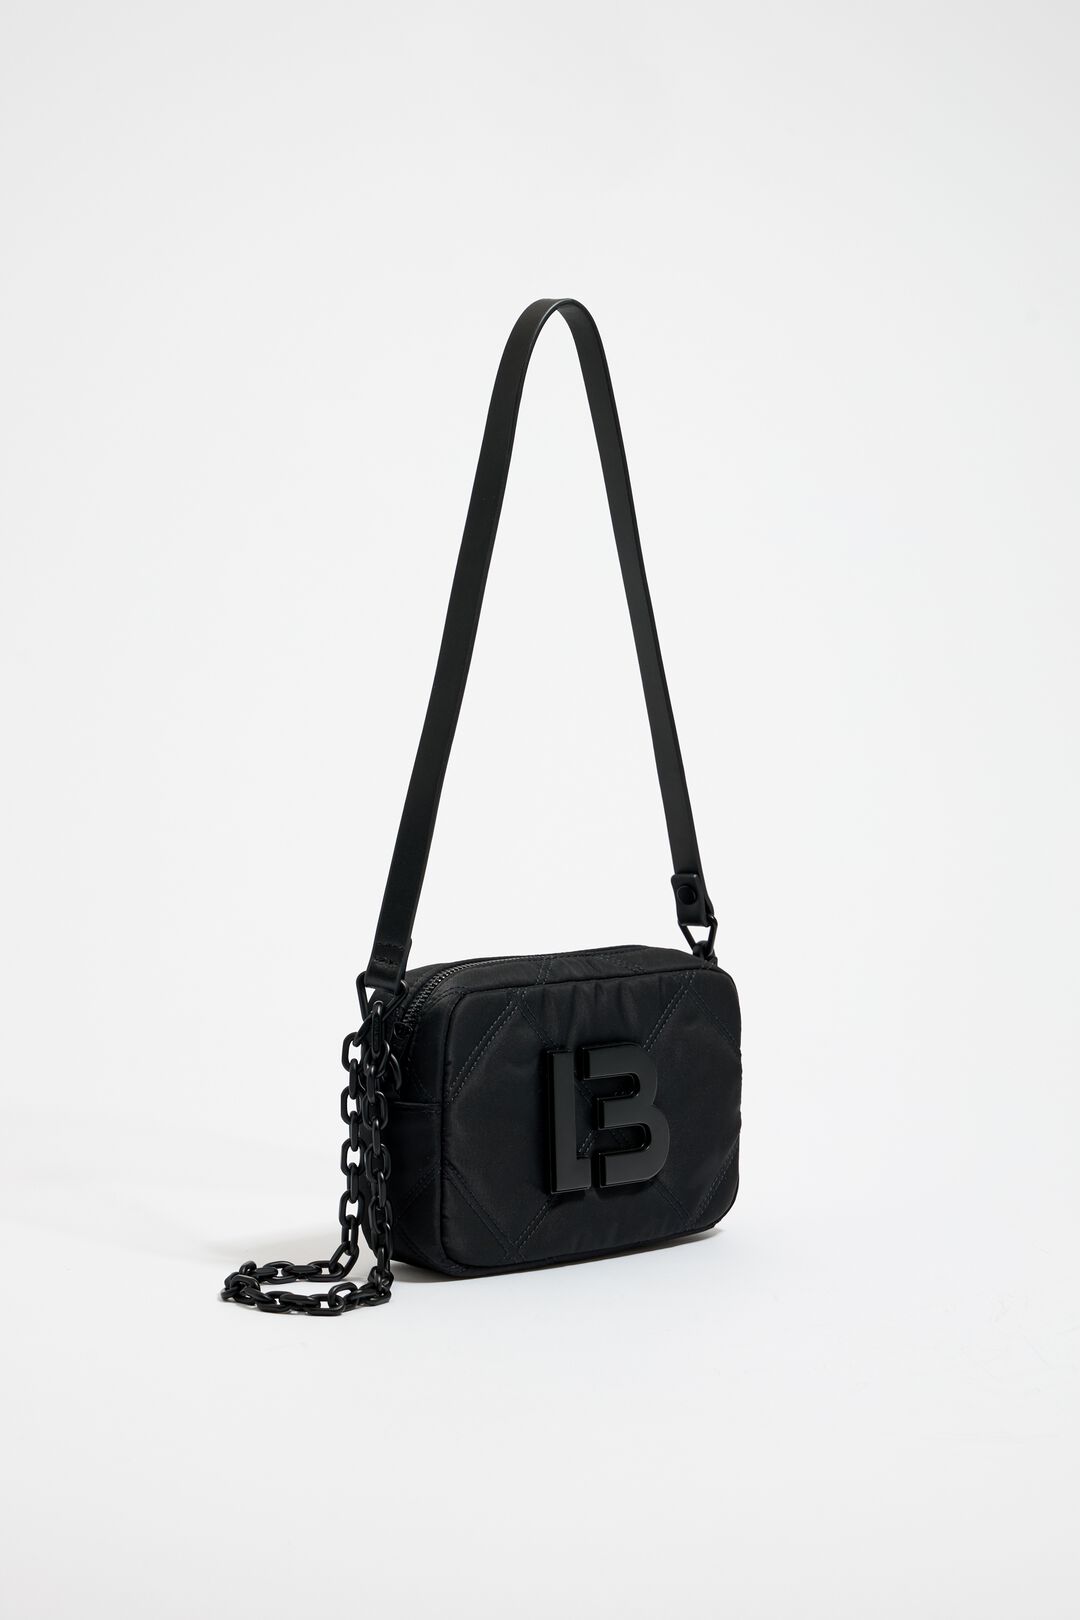 Bimba Y Lola Handbag in Black